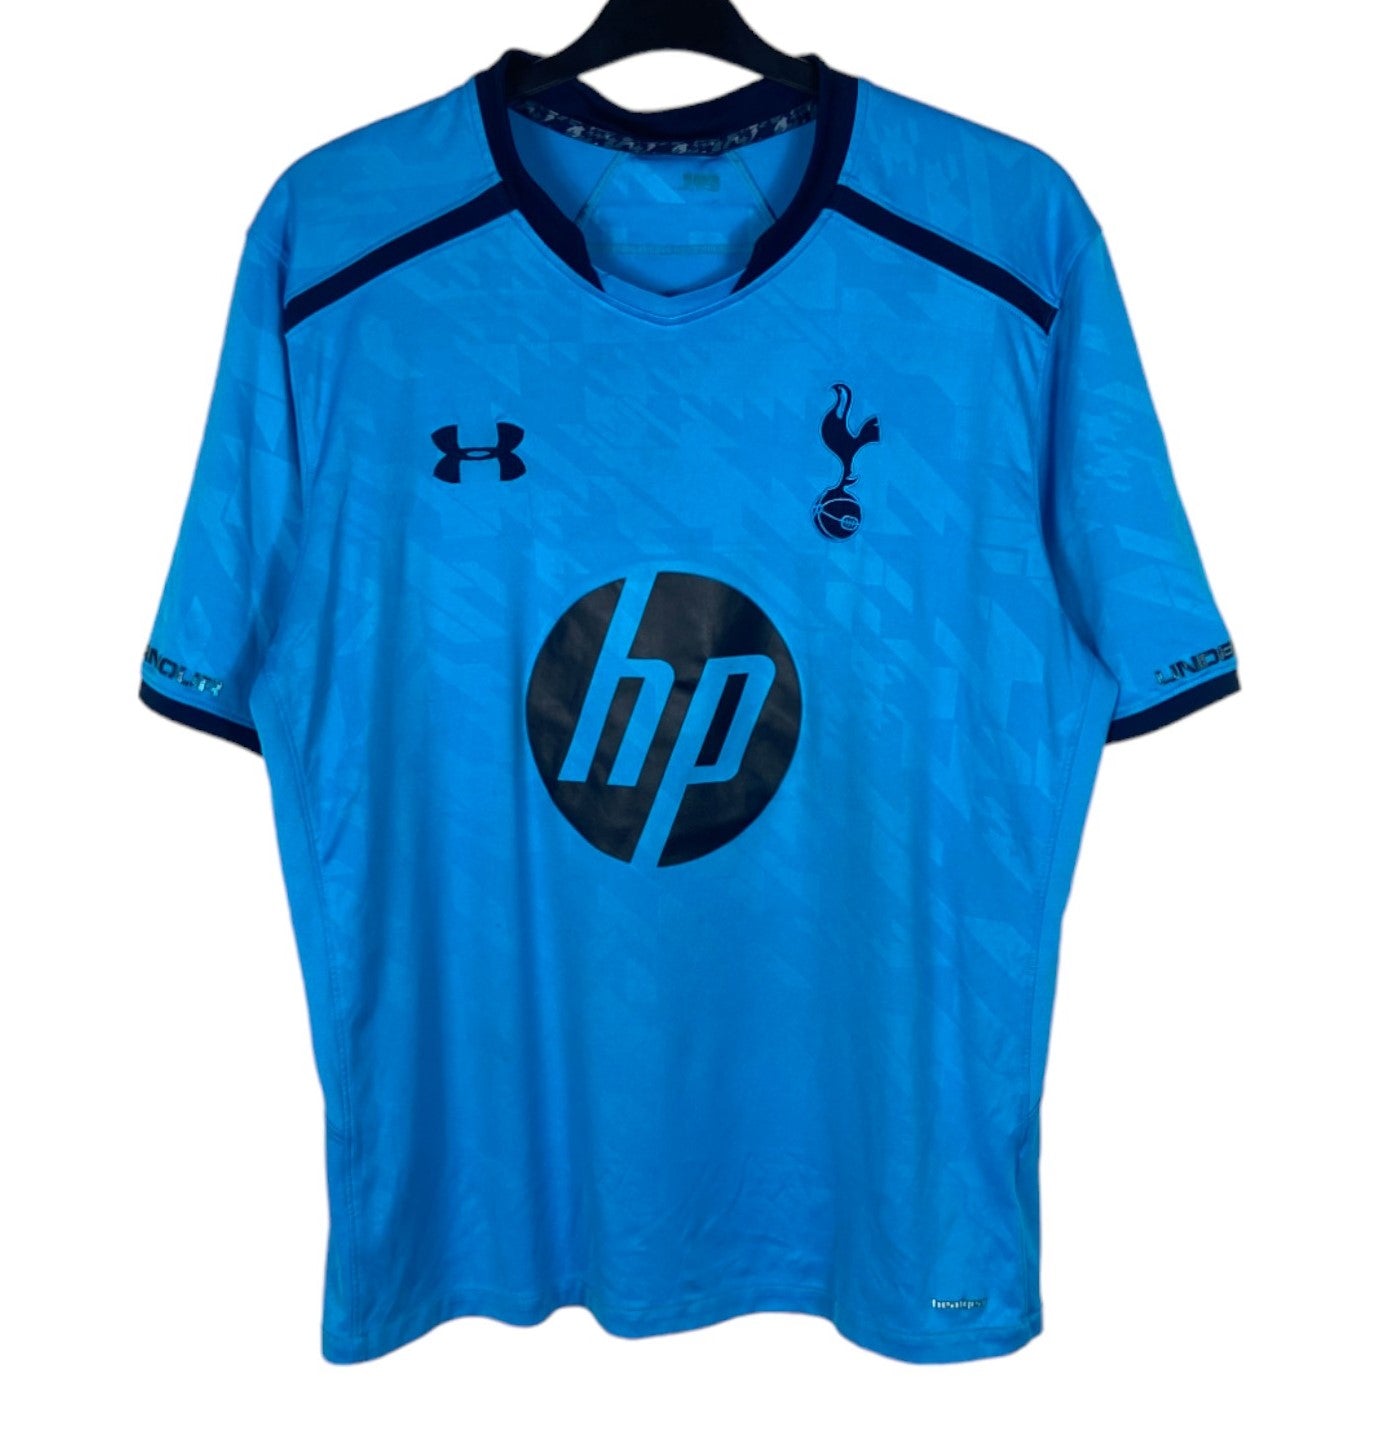 2013 2014 Tottenham Hotspur Under Armour Away Football Shirt WALKER 2 Men's Large